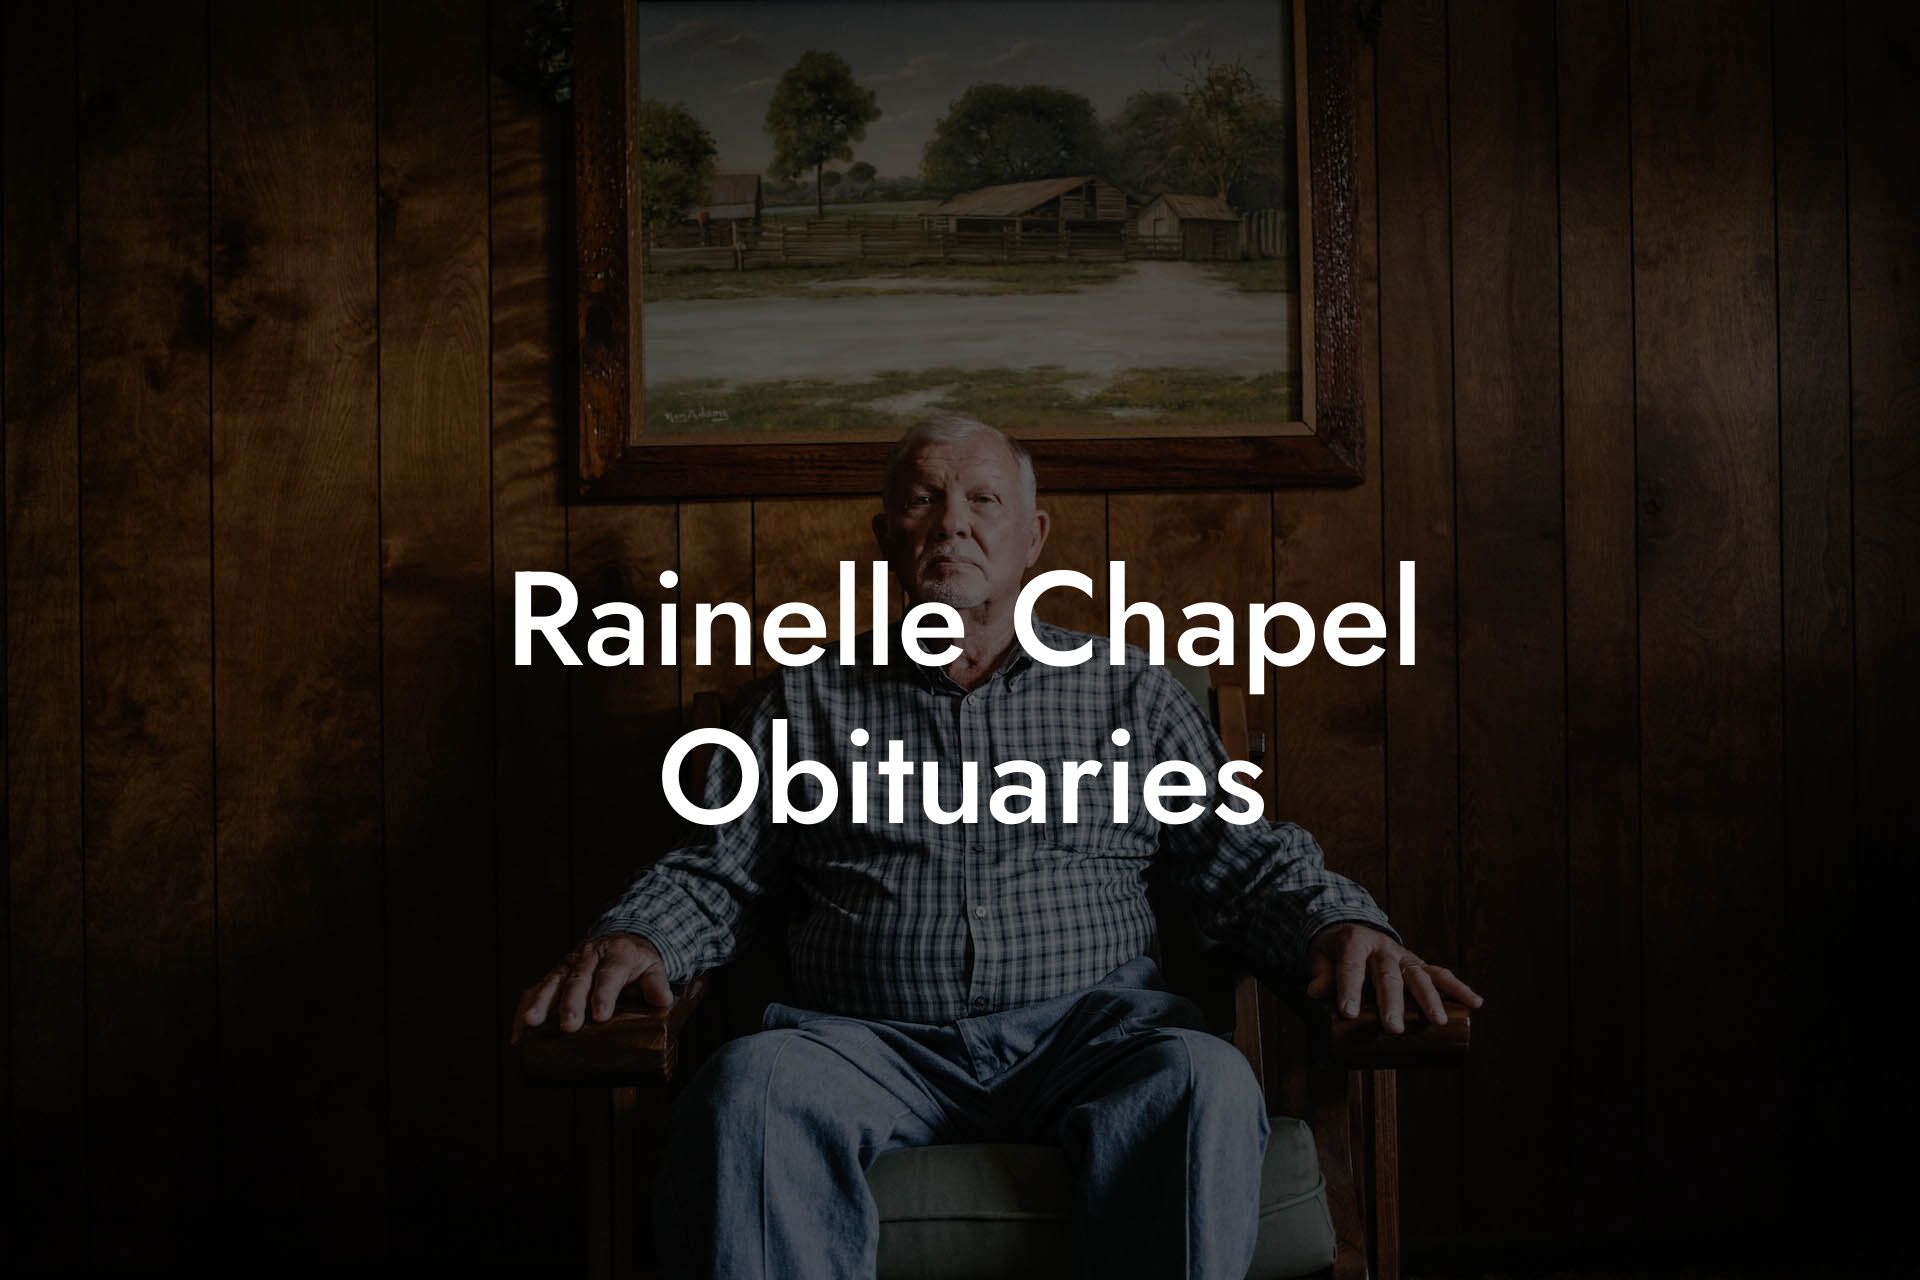 Rainelle Chapel Obituaries